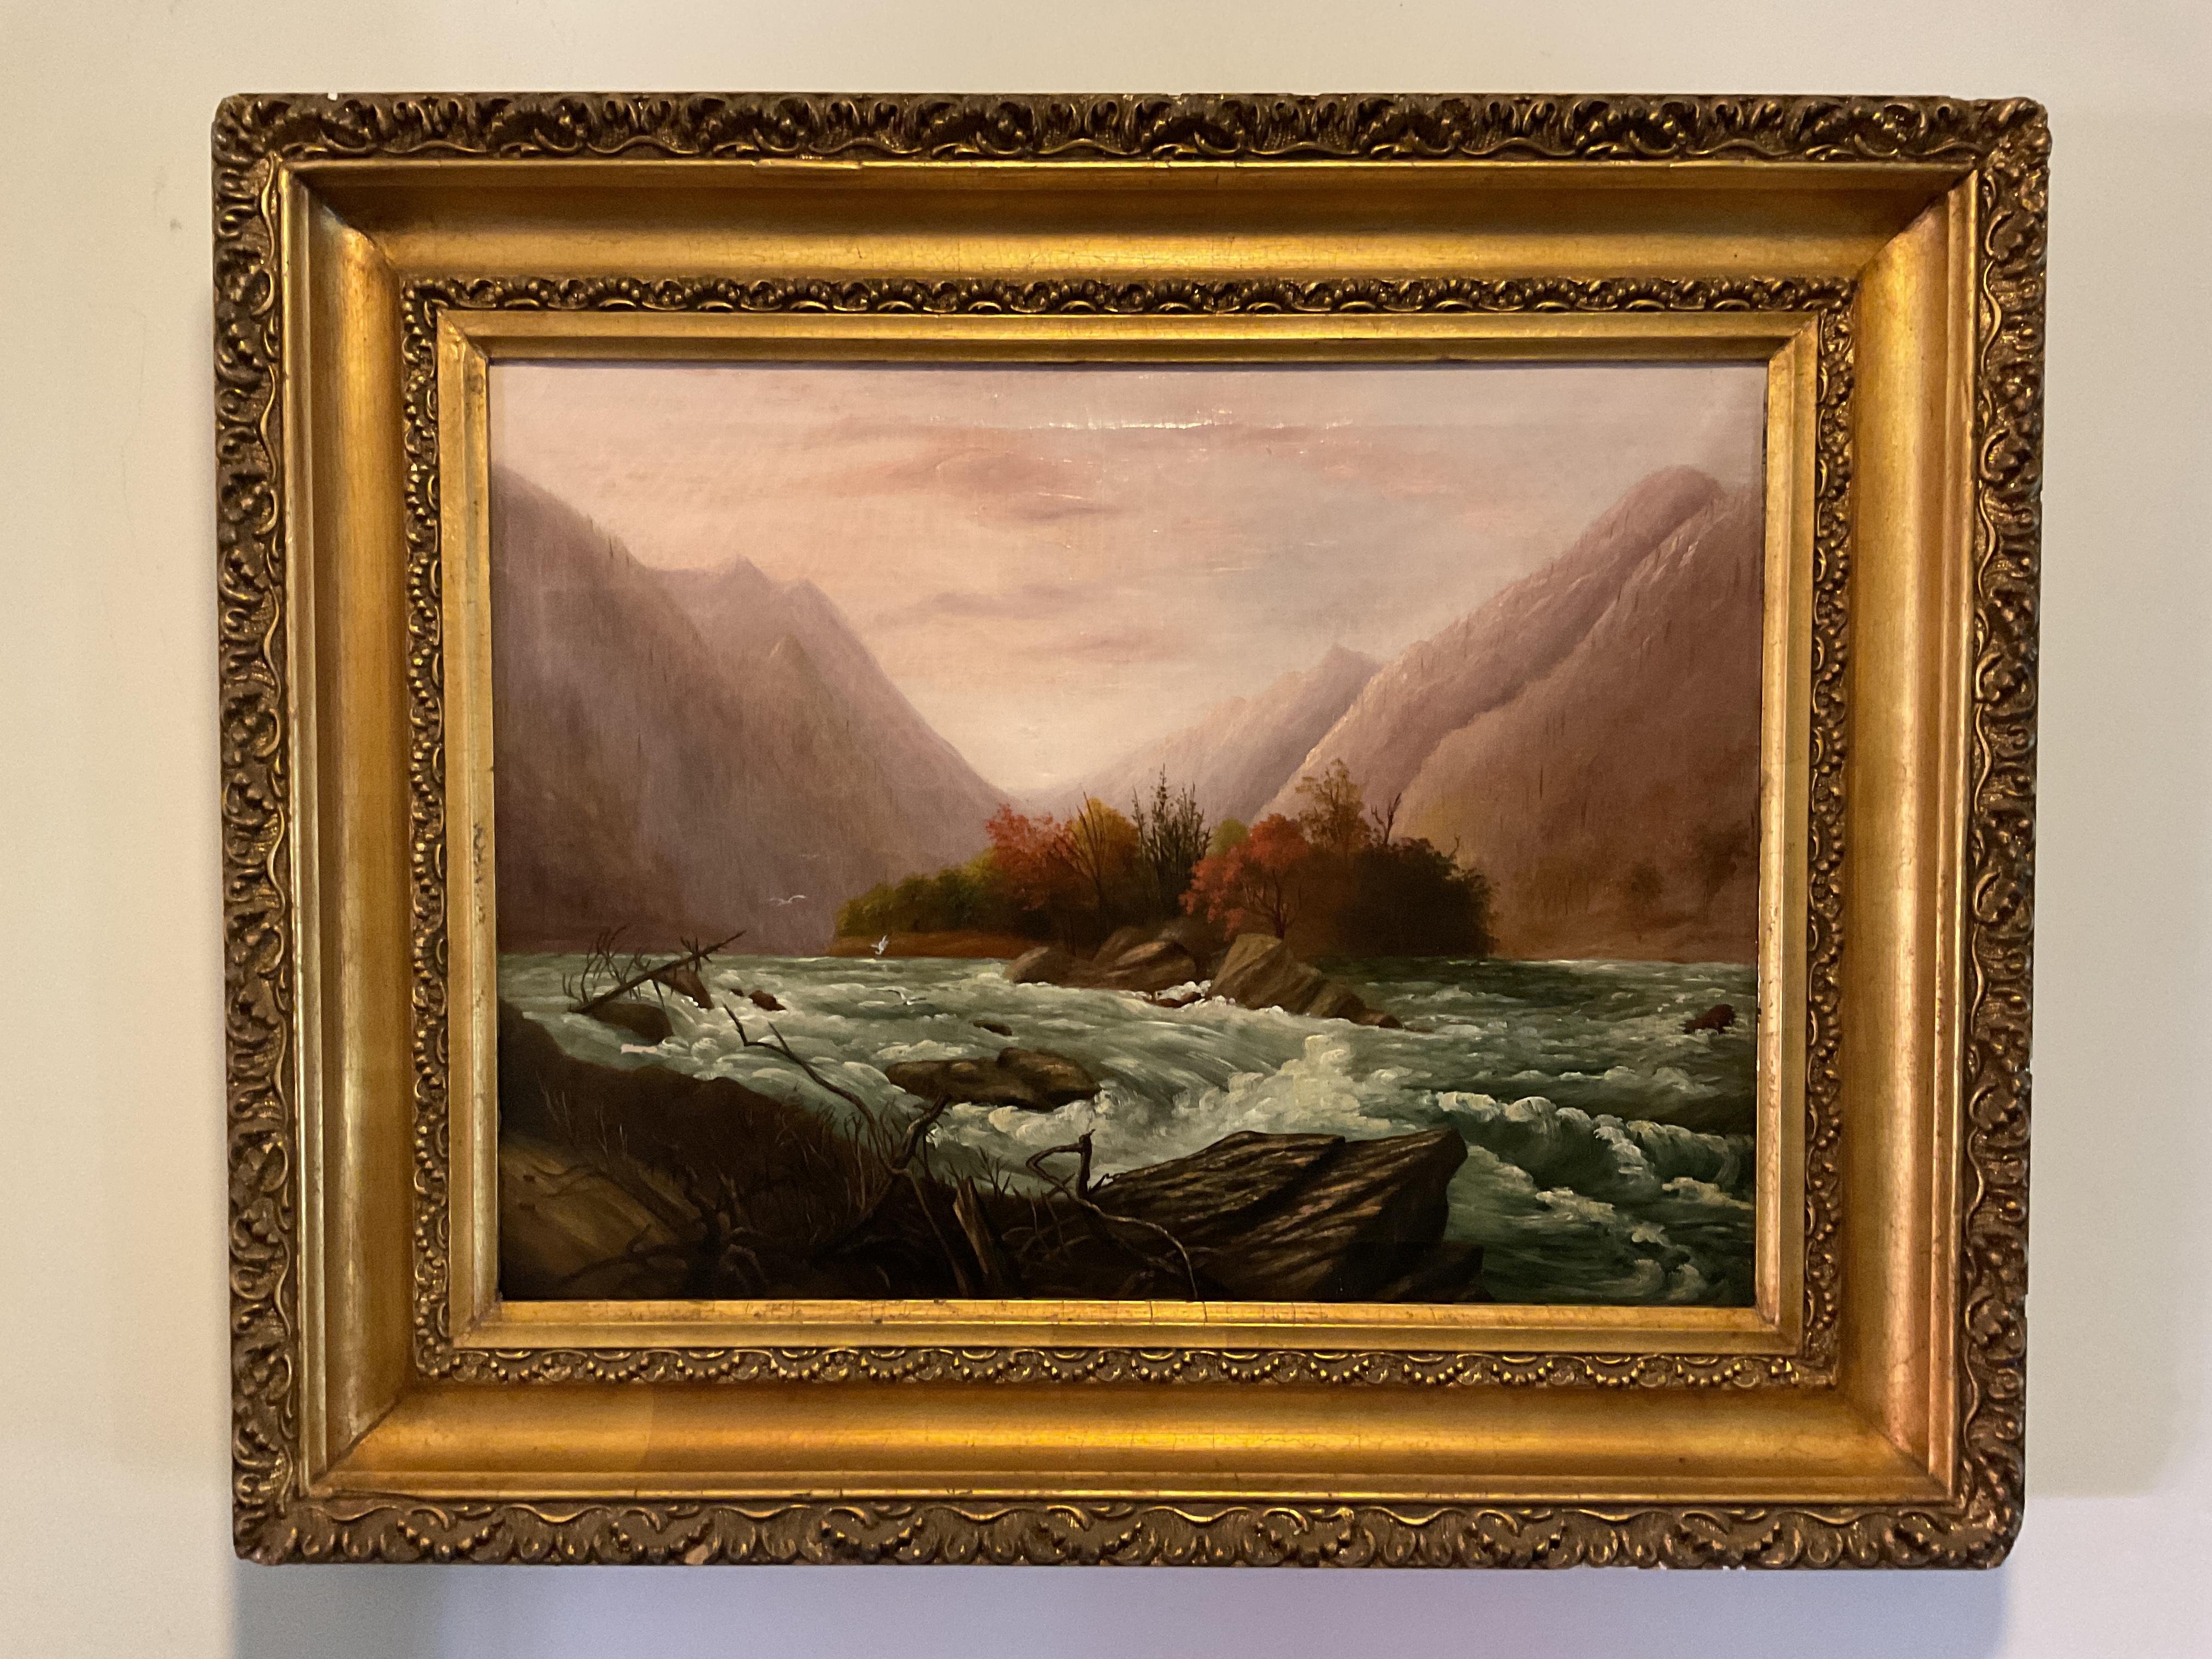 Landscape Painting Unknown - Rare peinture sudiste de la rivière French Broad, Caroline du Nord, vers 1890